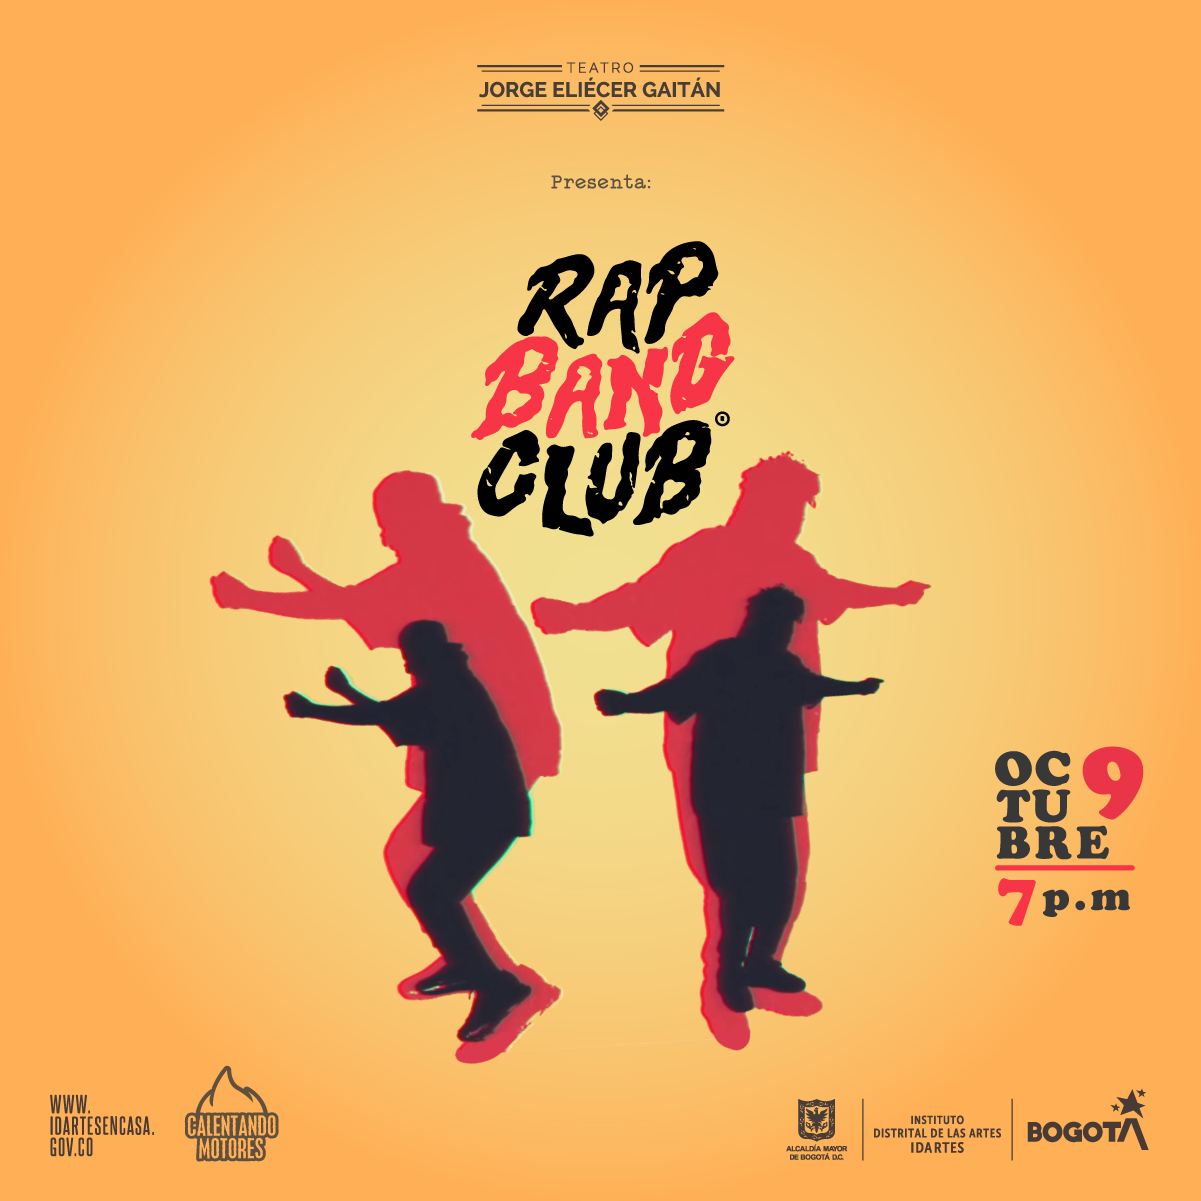 Concierto Rap bang club en el teatro jorge eliecer gaitan